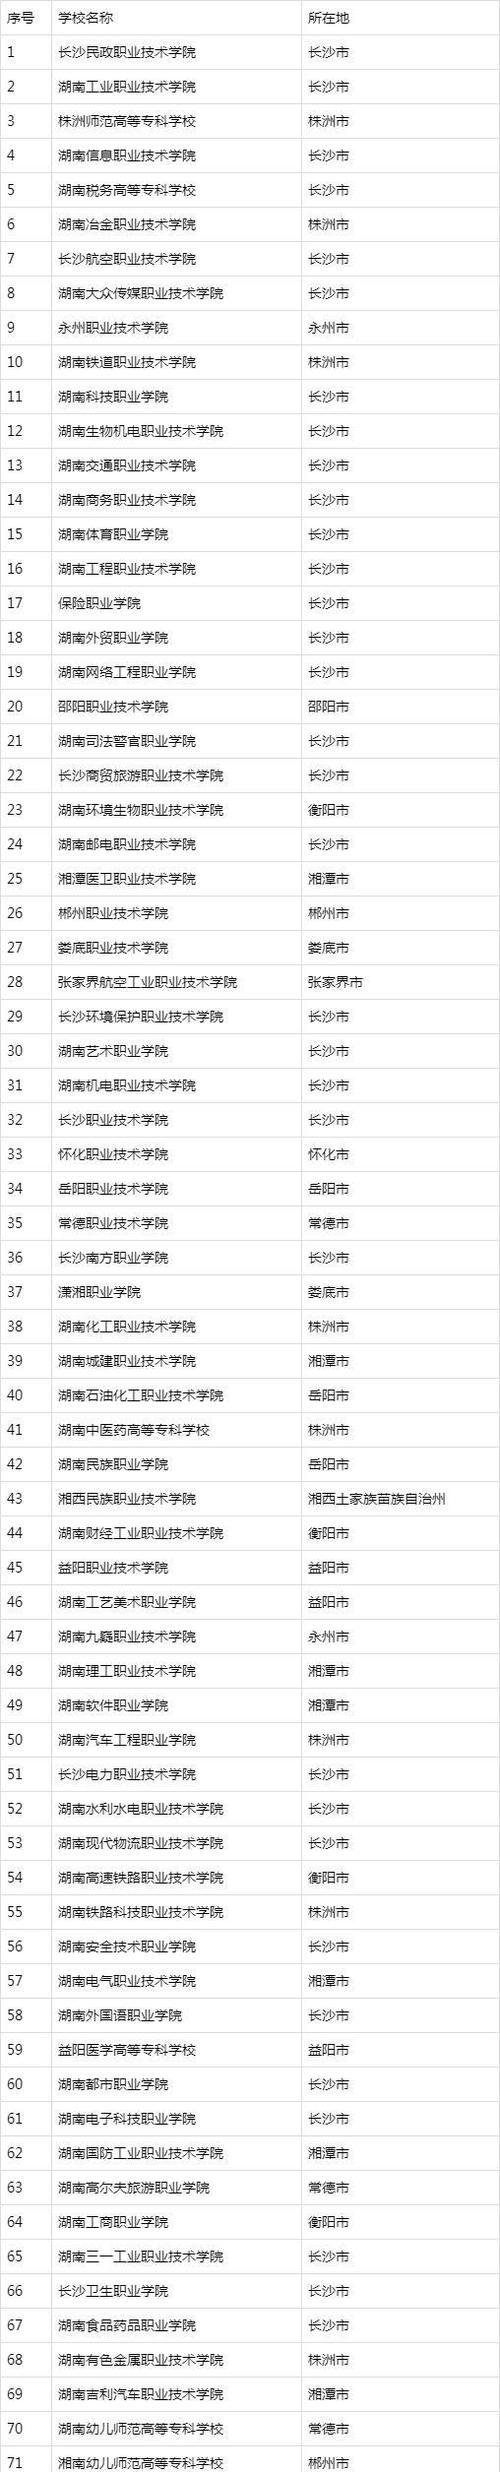 2021年湖南所有专科高校排名,分数排名,看看你能去哪个